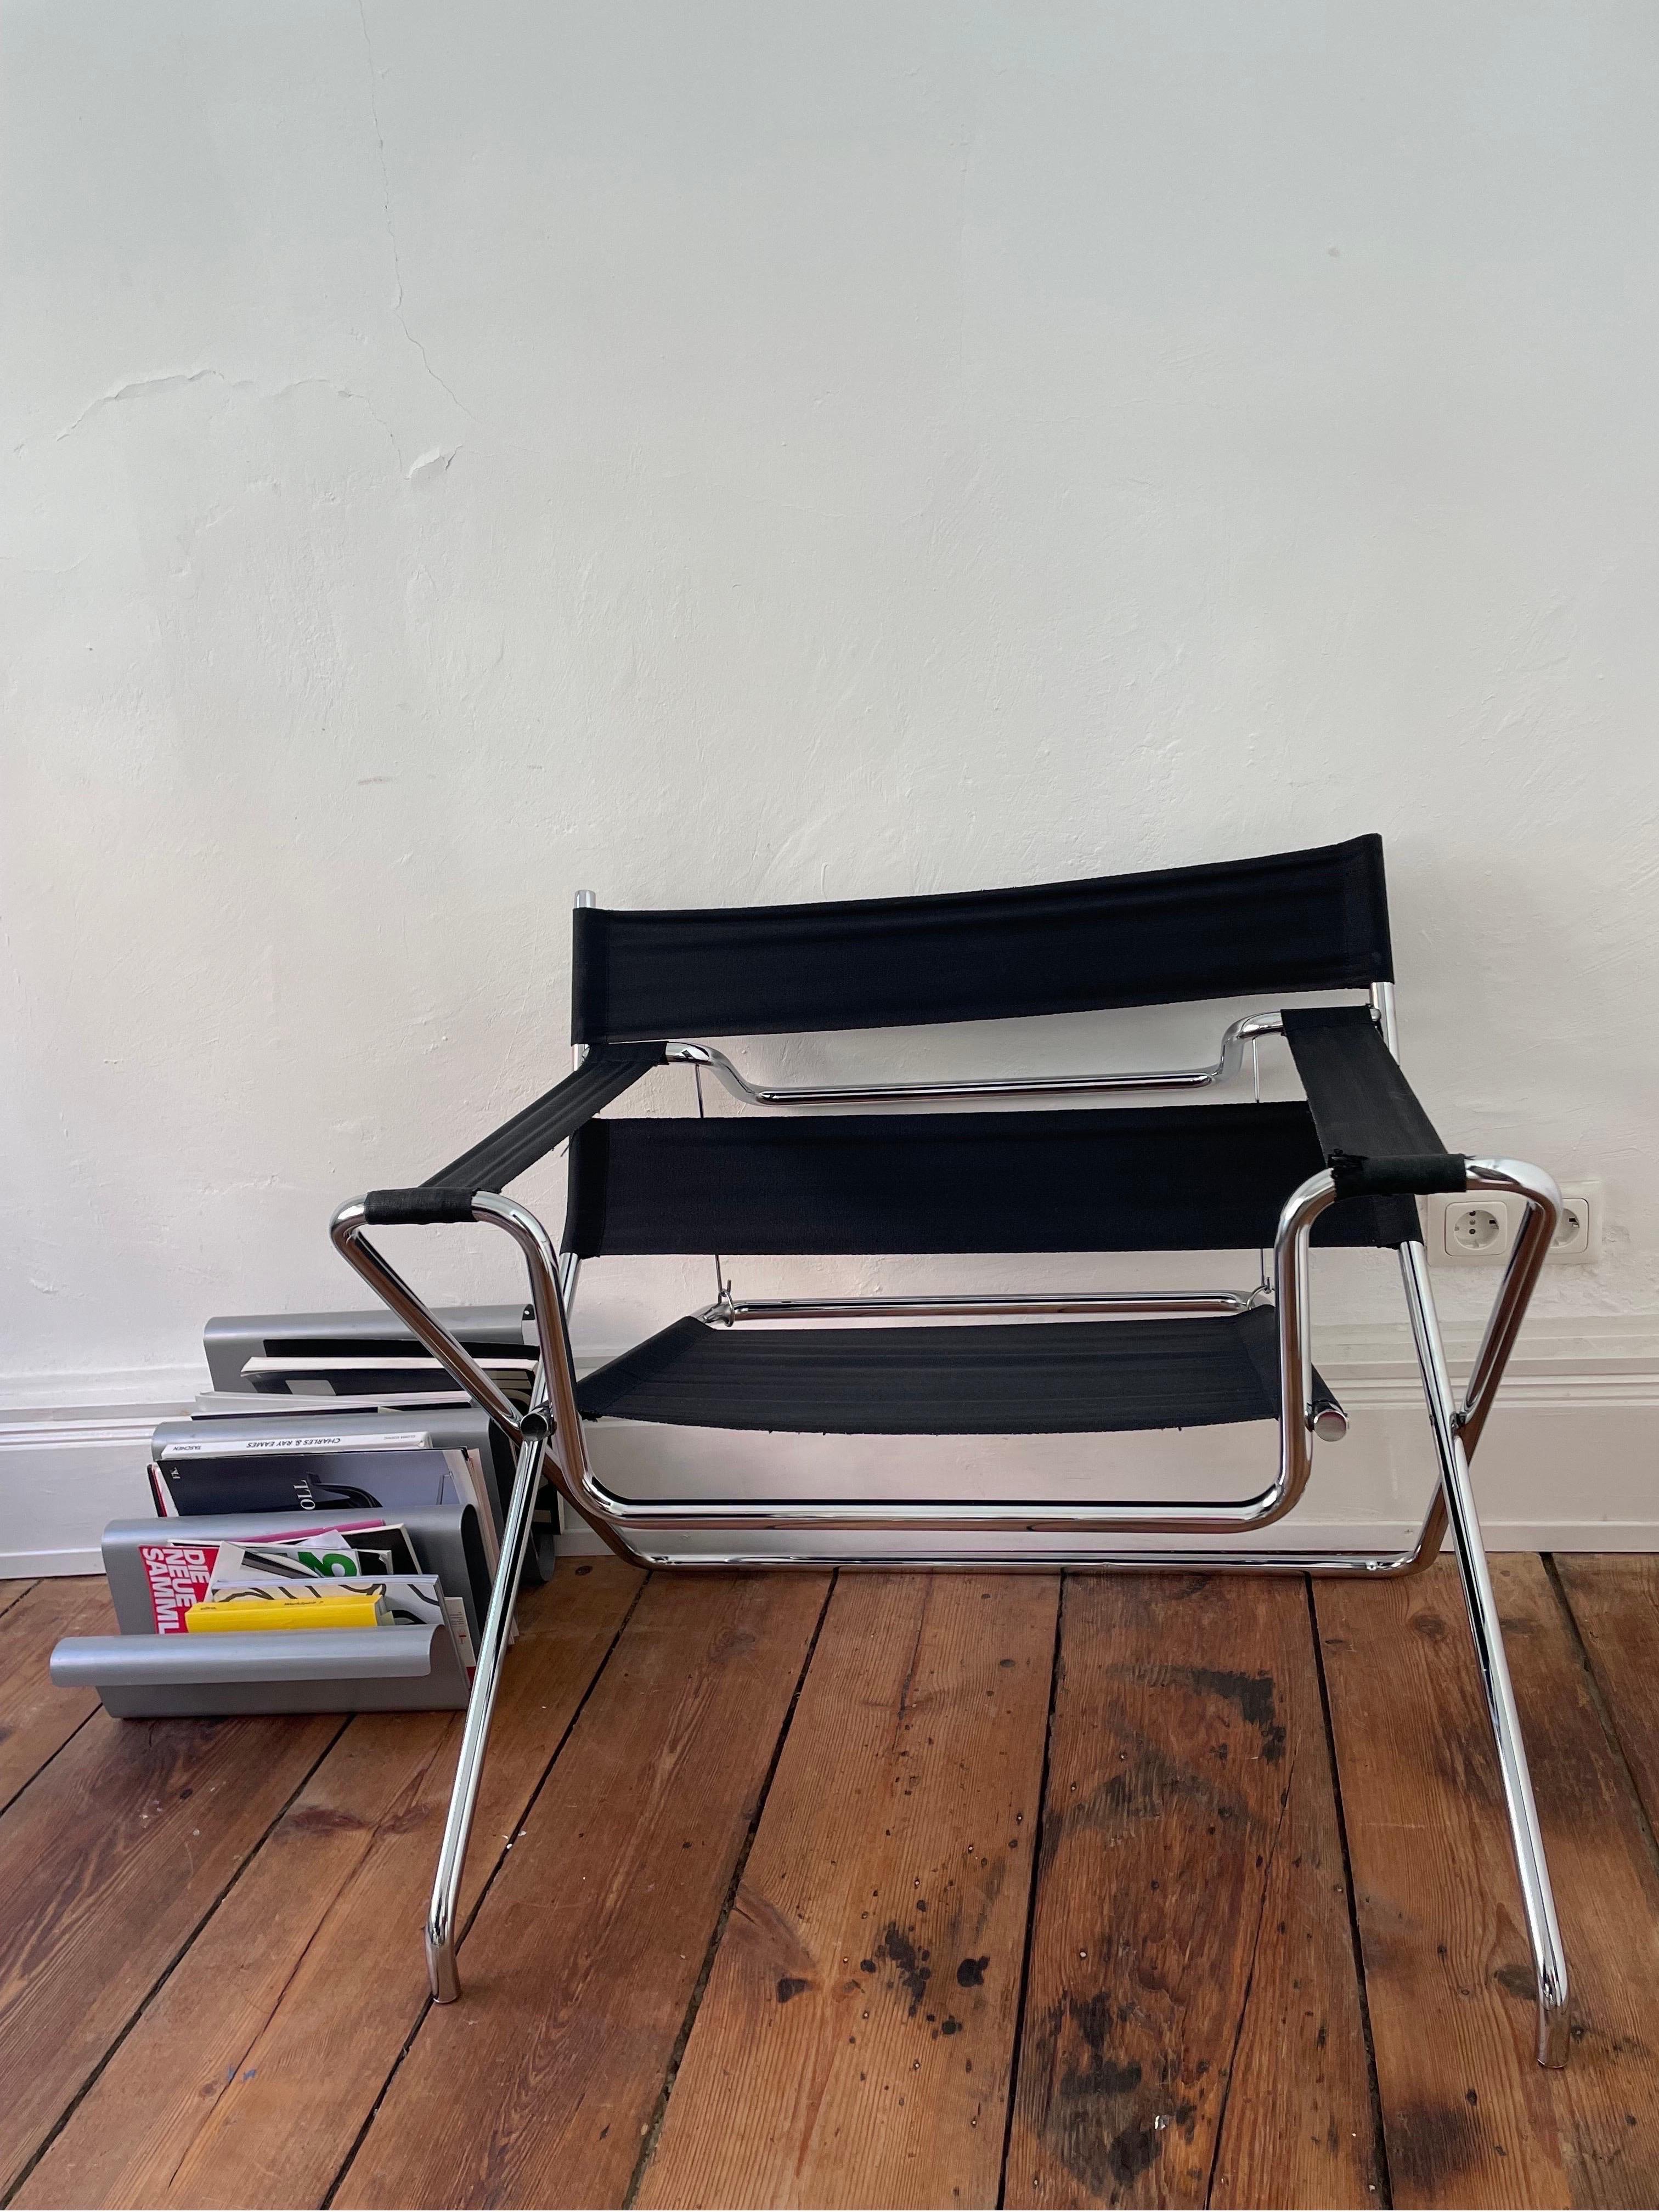 La chaise D4 de Marcel Breuer pour Tecta est l'un des plus beaux classiques du Bauhaus. C'est pourquoi je me réjouis de pouvoir vous offrir ce produit 100% original. 

Cette œuvre de maître zélée est d'une qualité irréprochable. Hergestellt wurde er